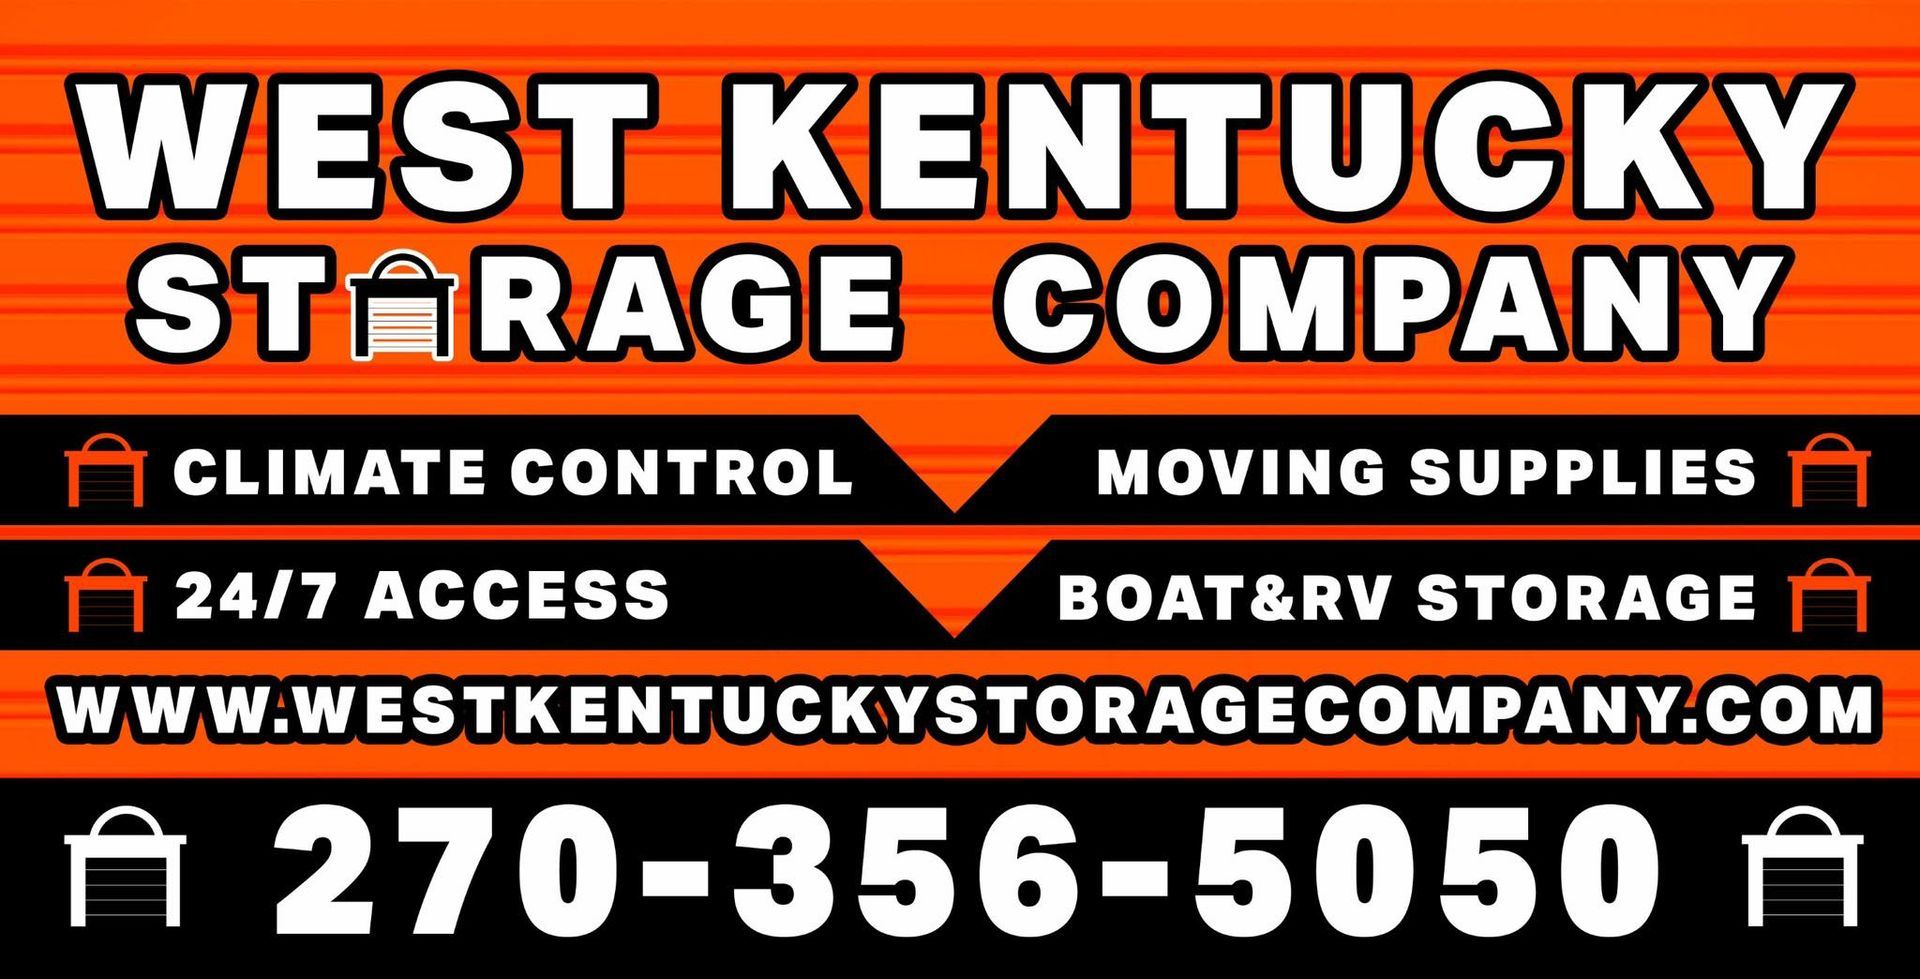 West Kentucky Storage Company